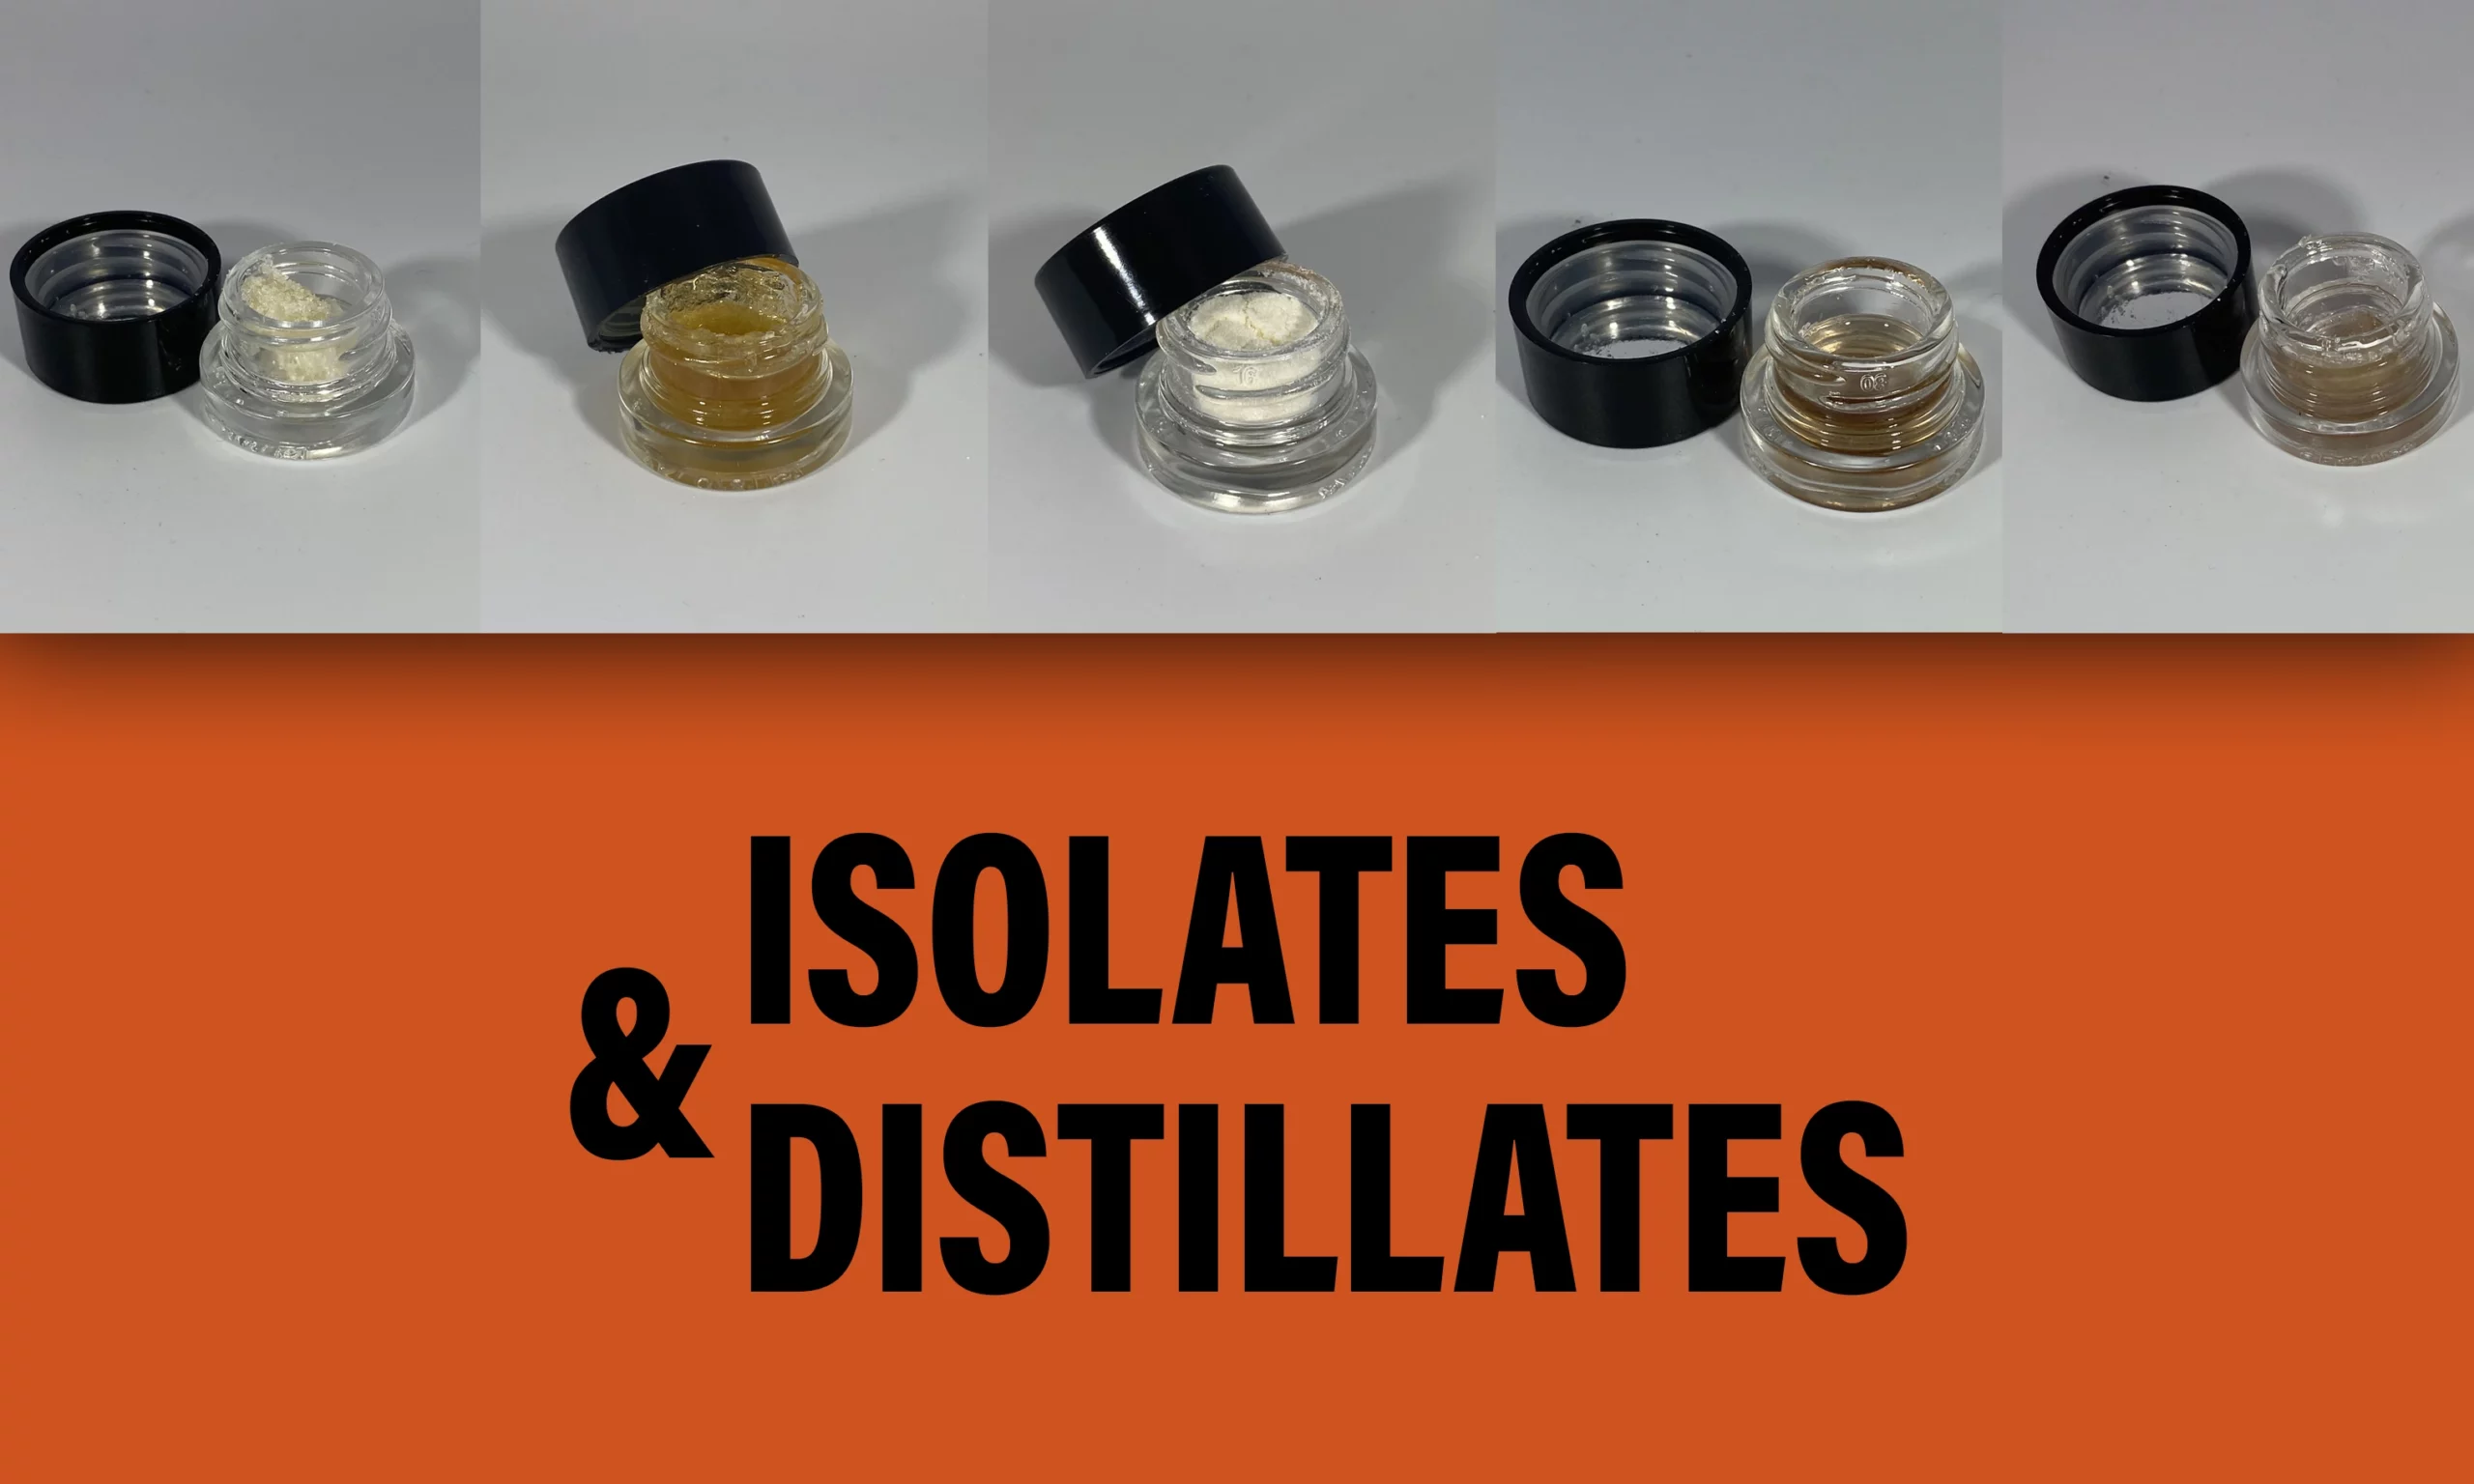 Isolates & Distillates